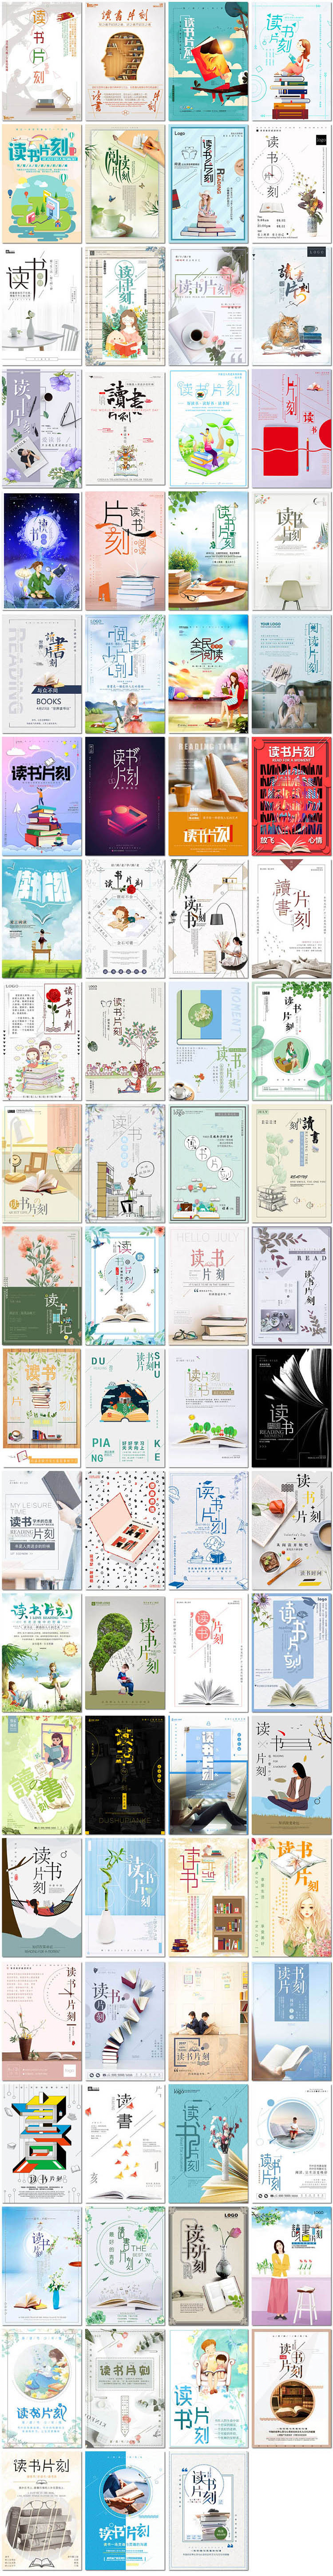 日系读书片刻海报世界读书日儿童阅读节日图书馆海报素材设计模板